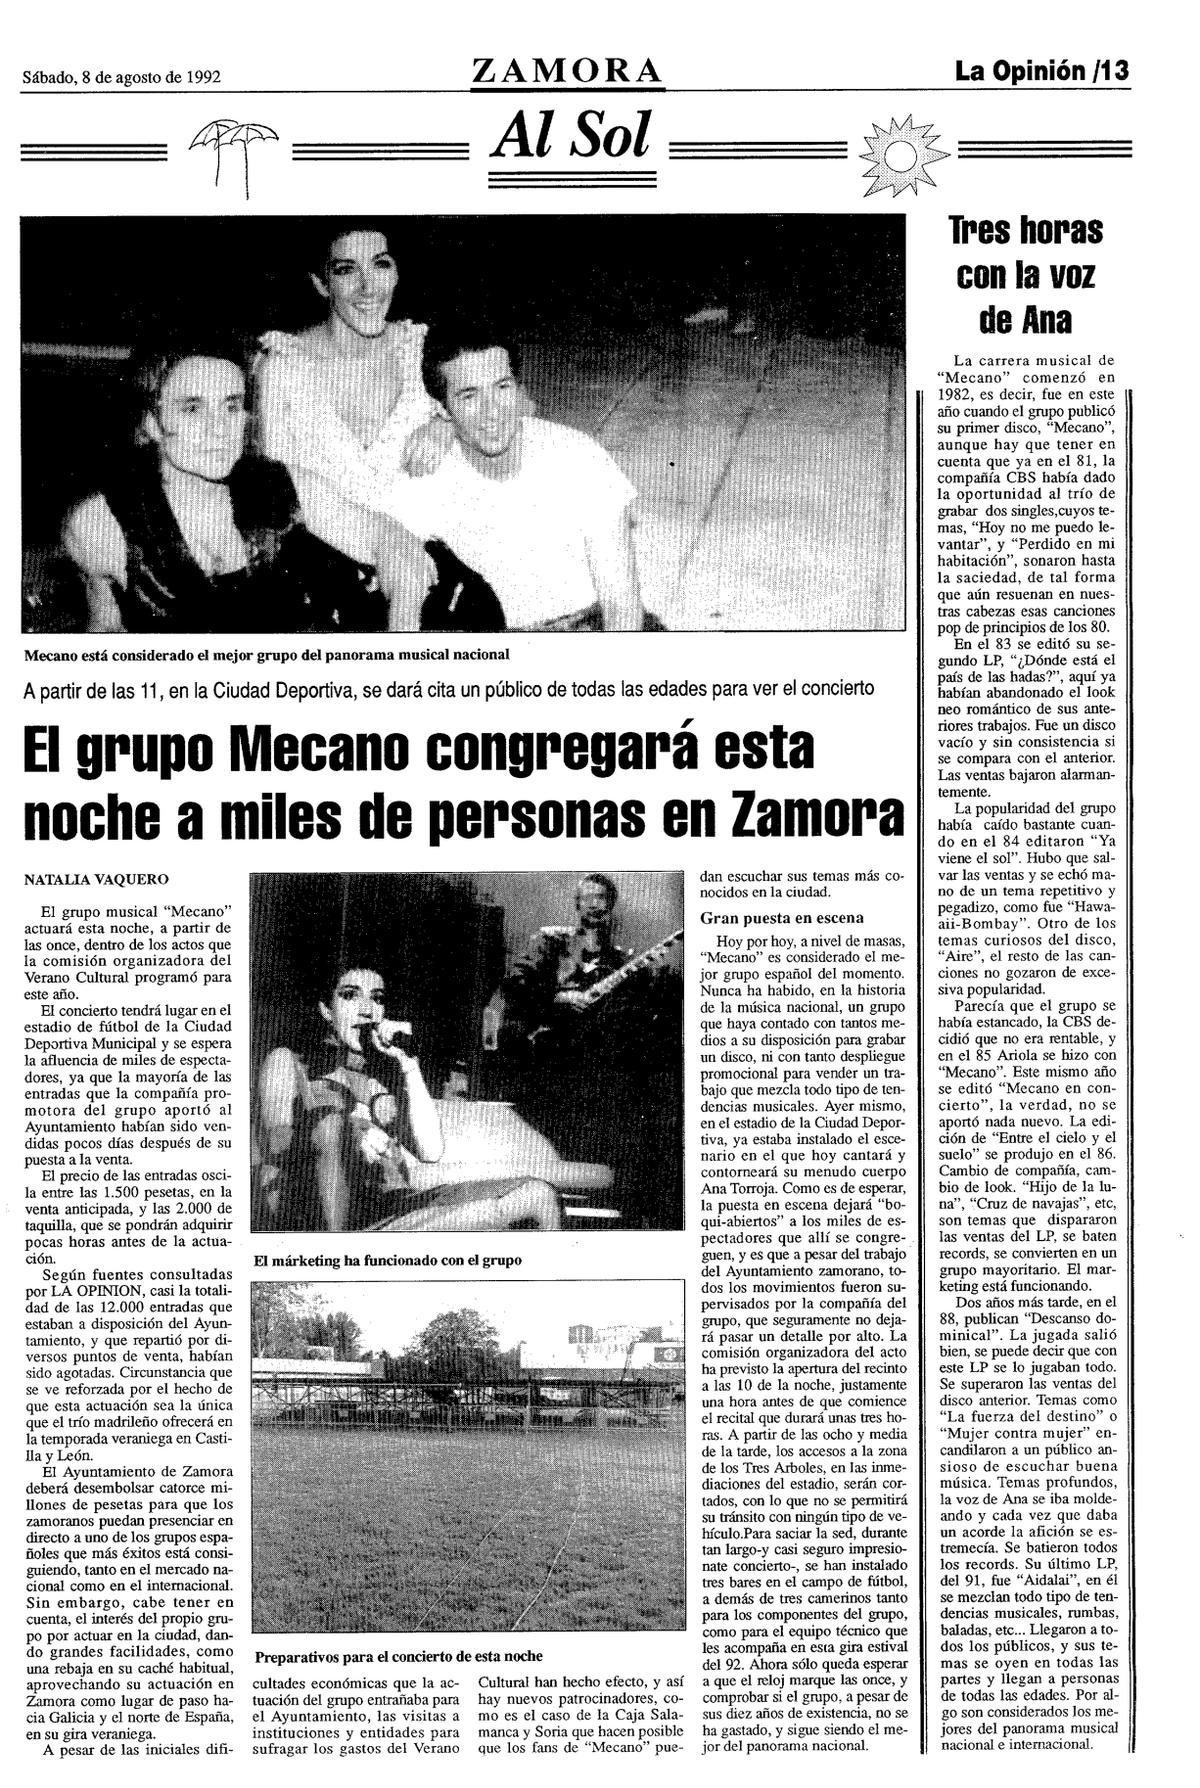 Previa del concierto de Mecano el 8 de agosto de 1992.